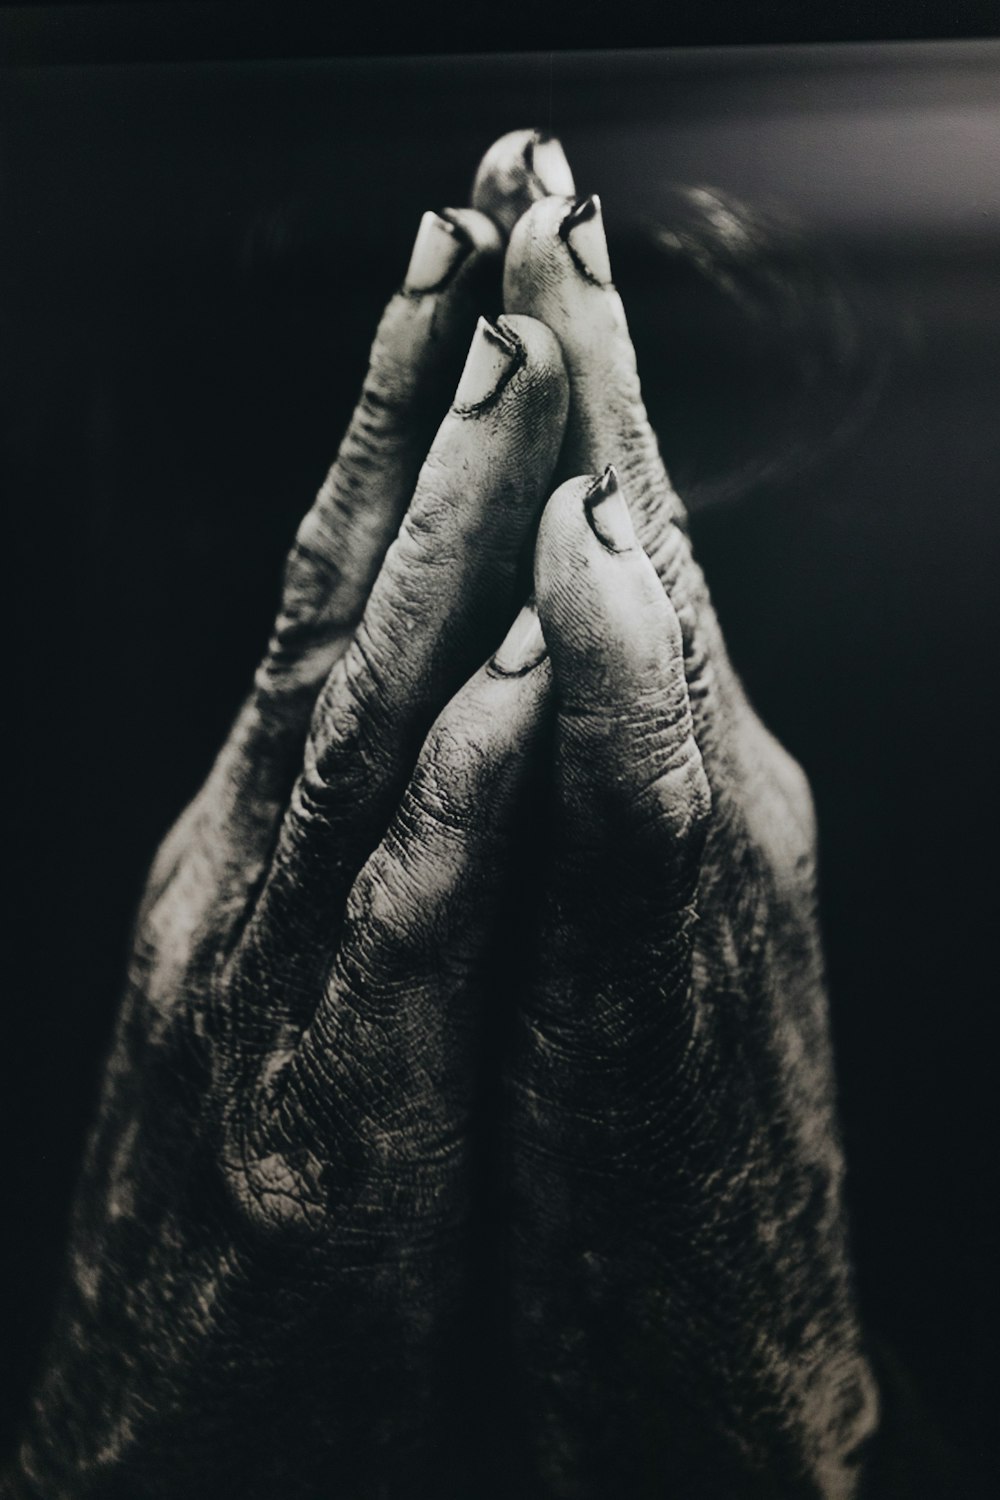 Photographie en niveaux de gris de mains en prière